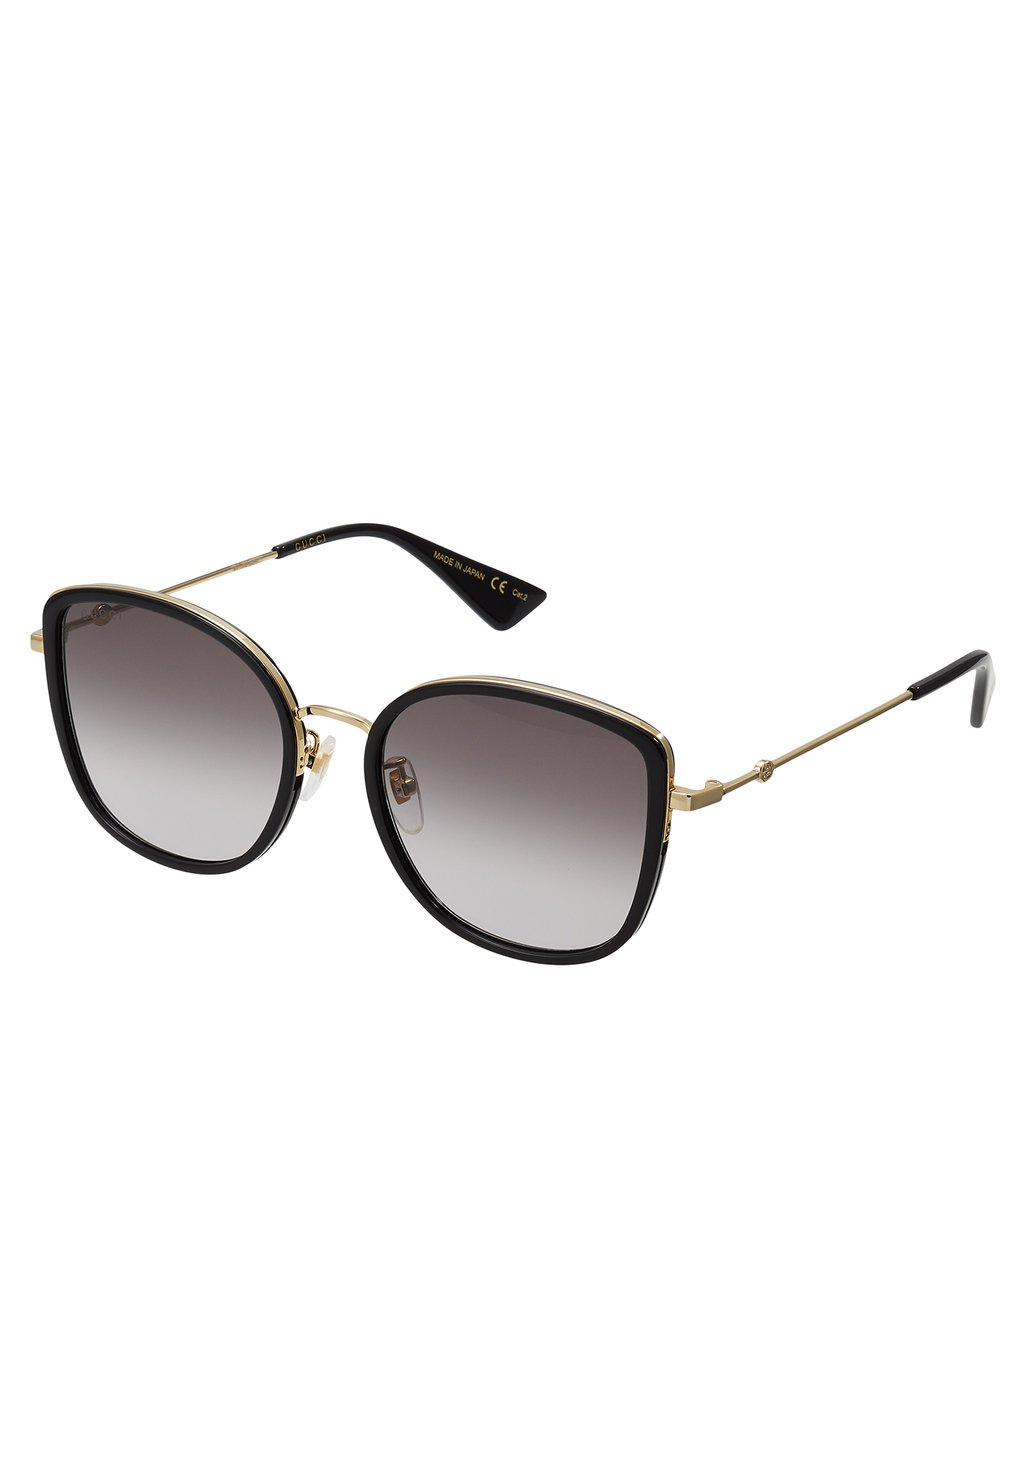 Солнцезащитные очки Gucci, чёрные/золотые кроссовки maria mare zapatillas black gold coloured grey